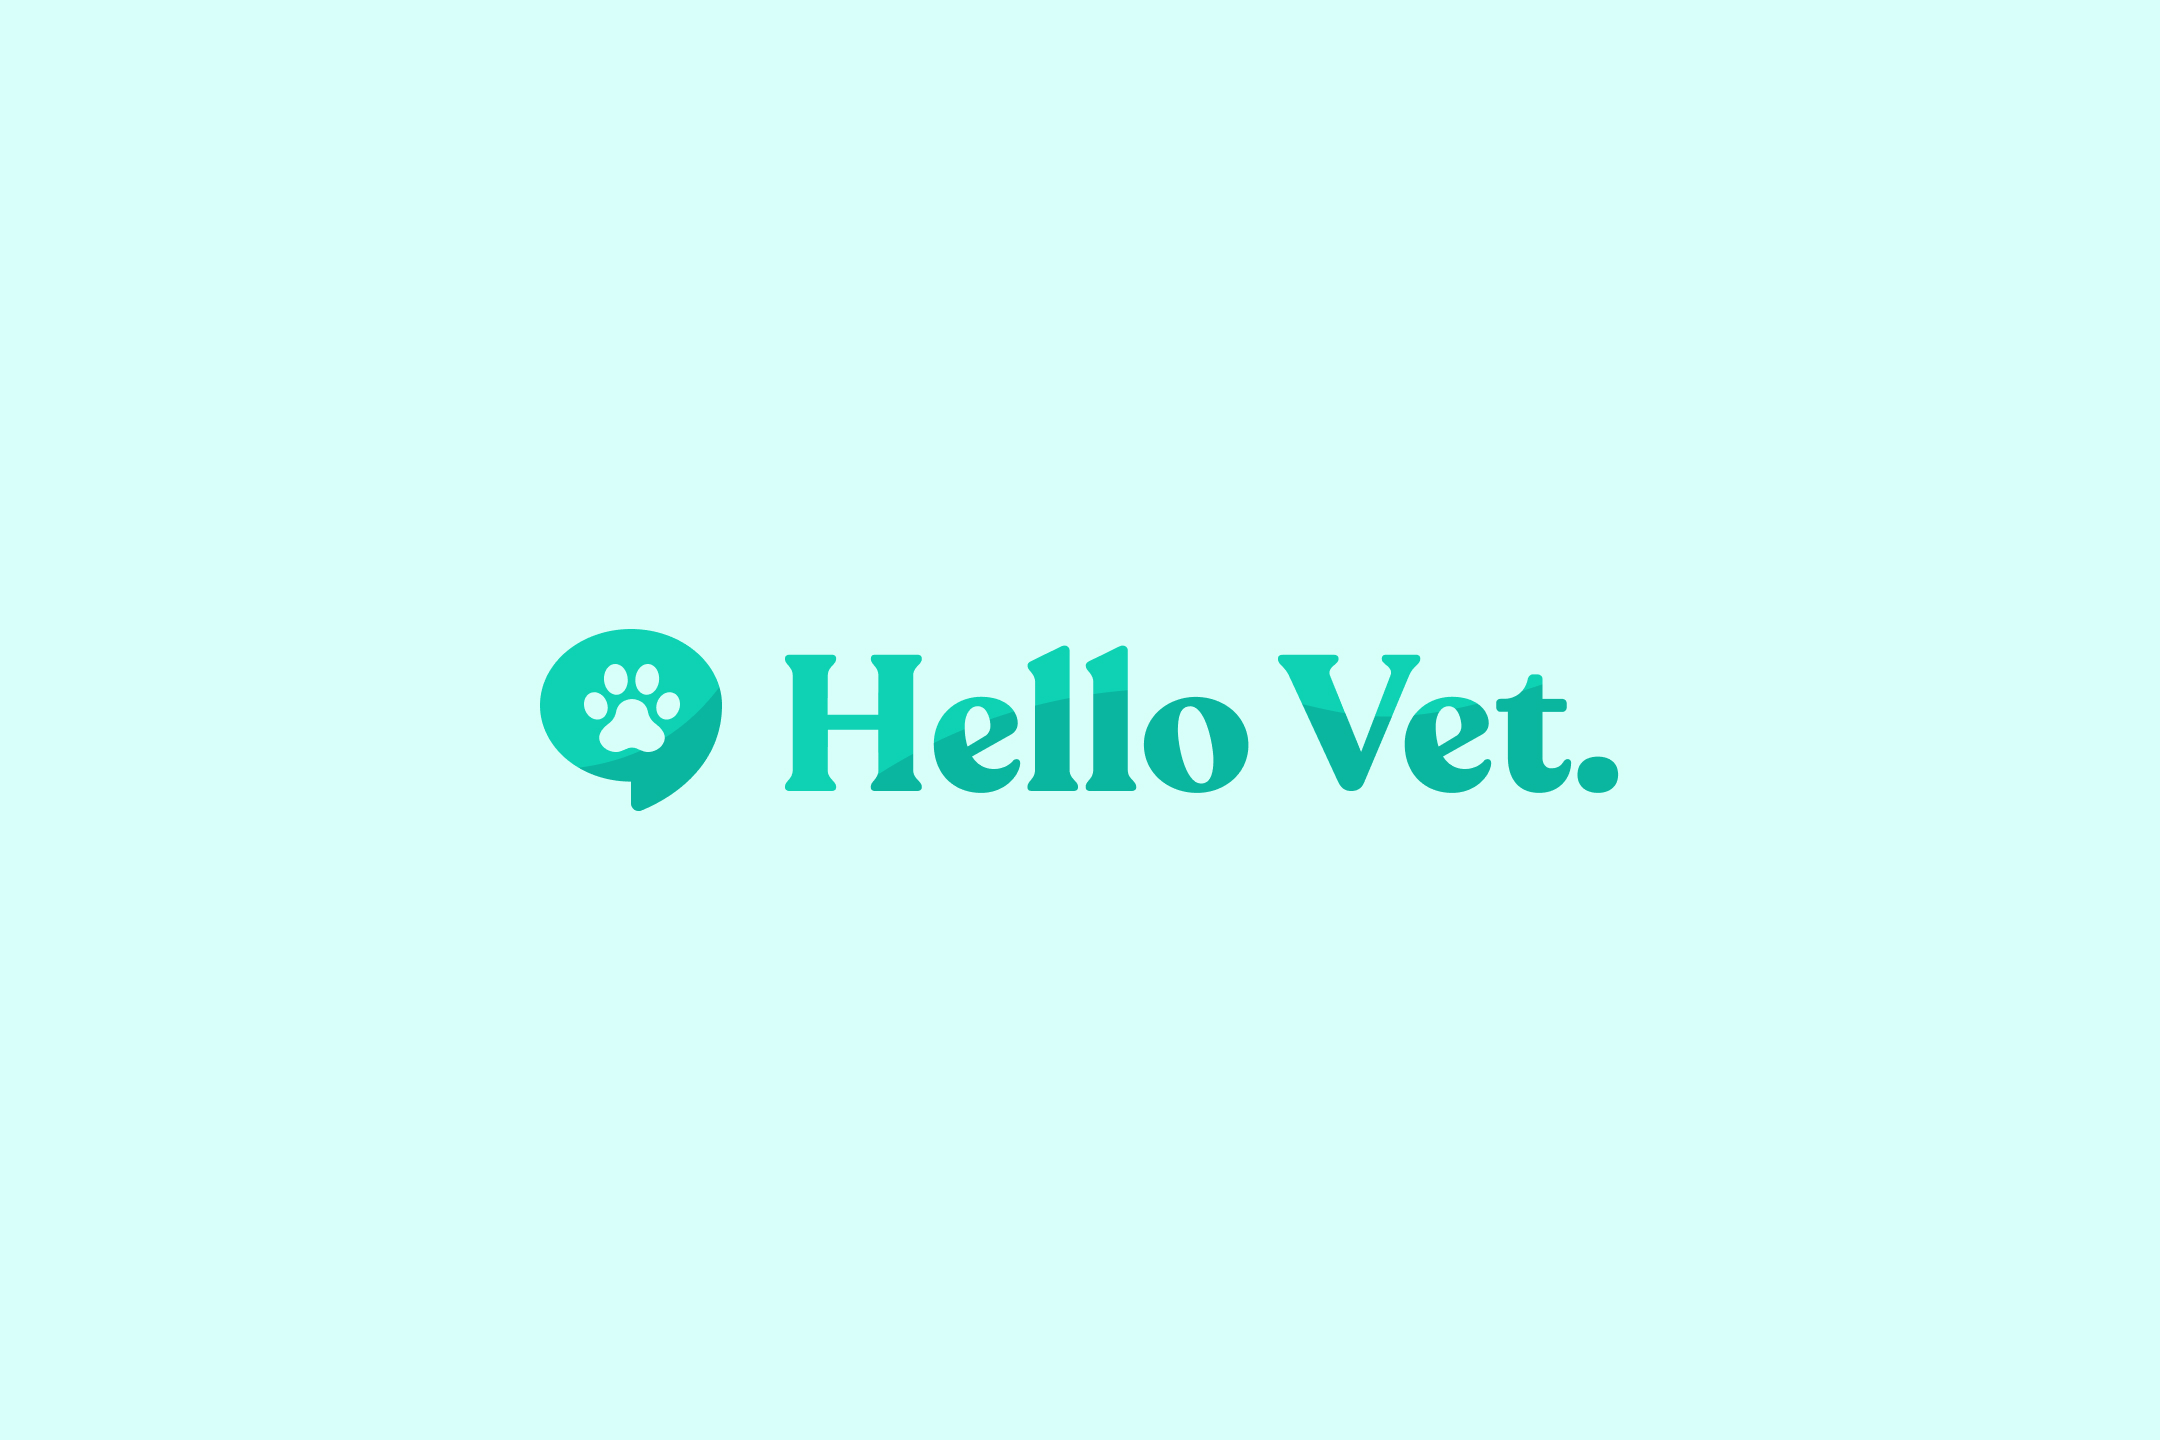 Hello vet opener